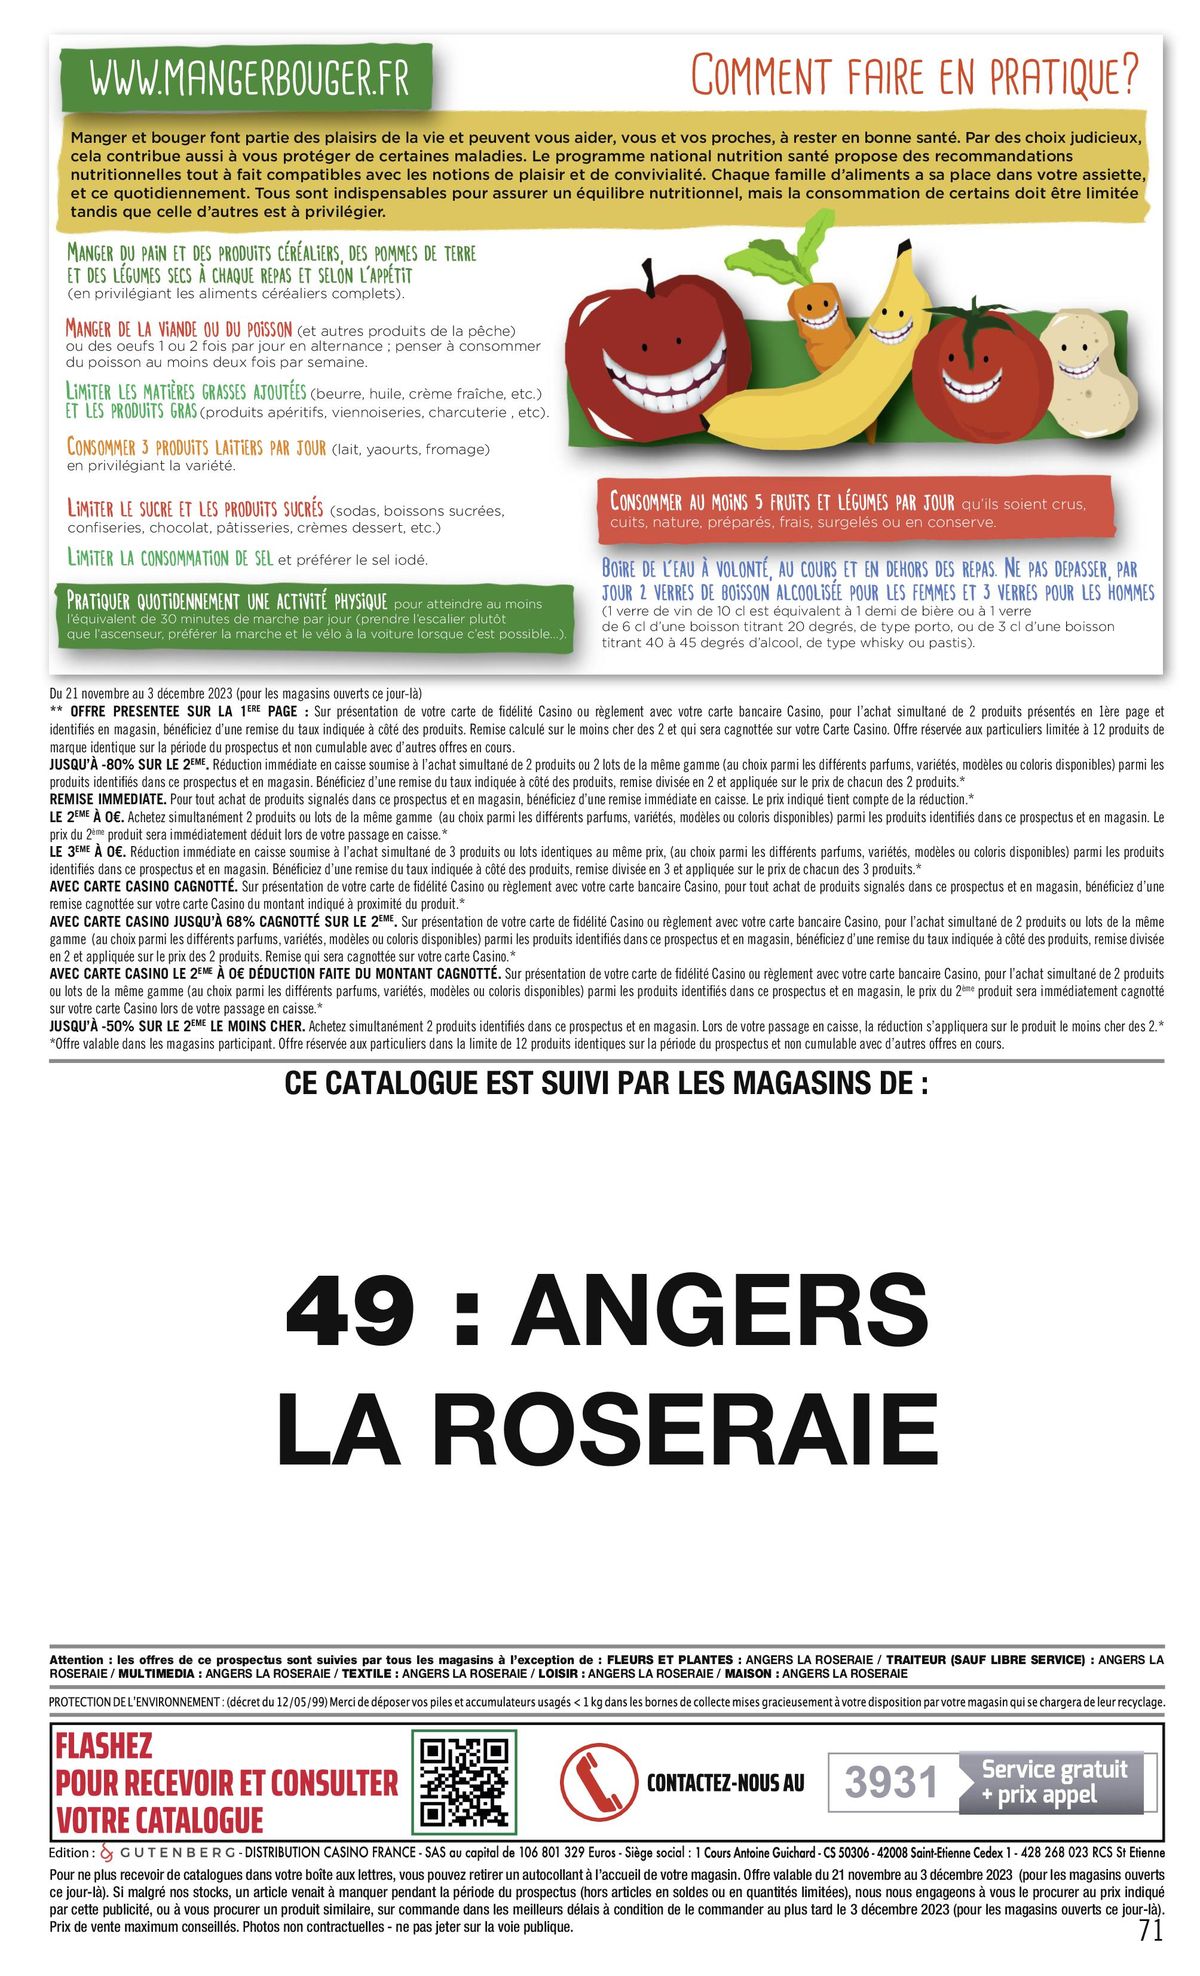 Catalogue -68 % CAGNOTTÉS SUR LE 2€, page 00071